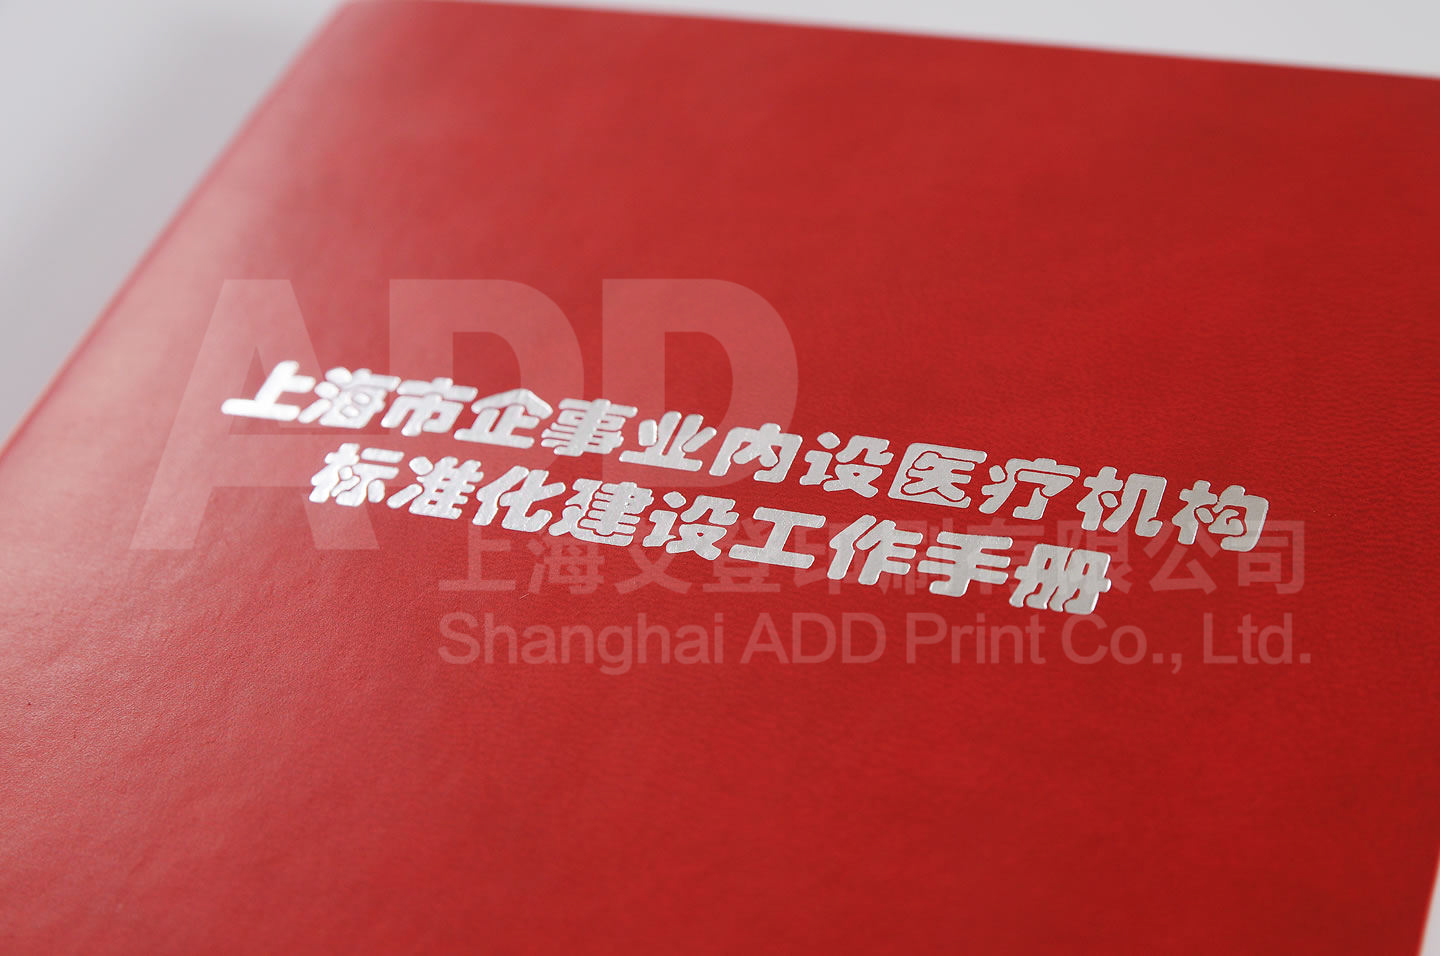 上海市企事业内设医疗机构标准化建设工作手册